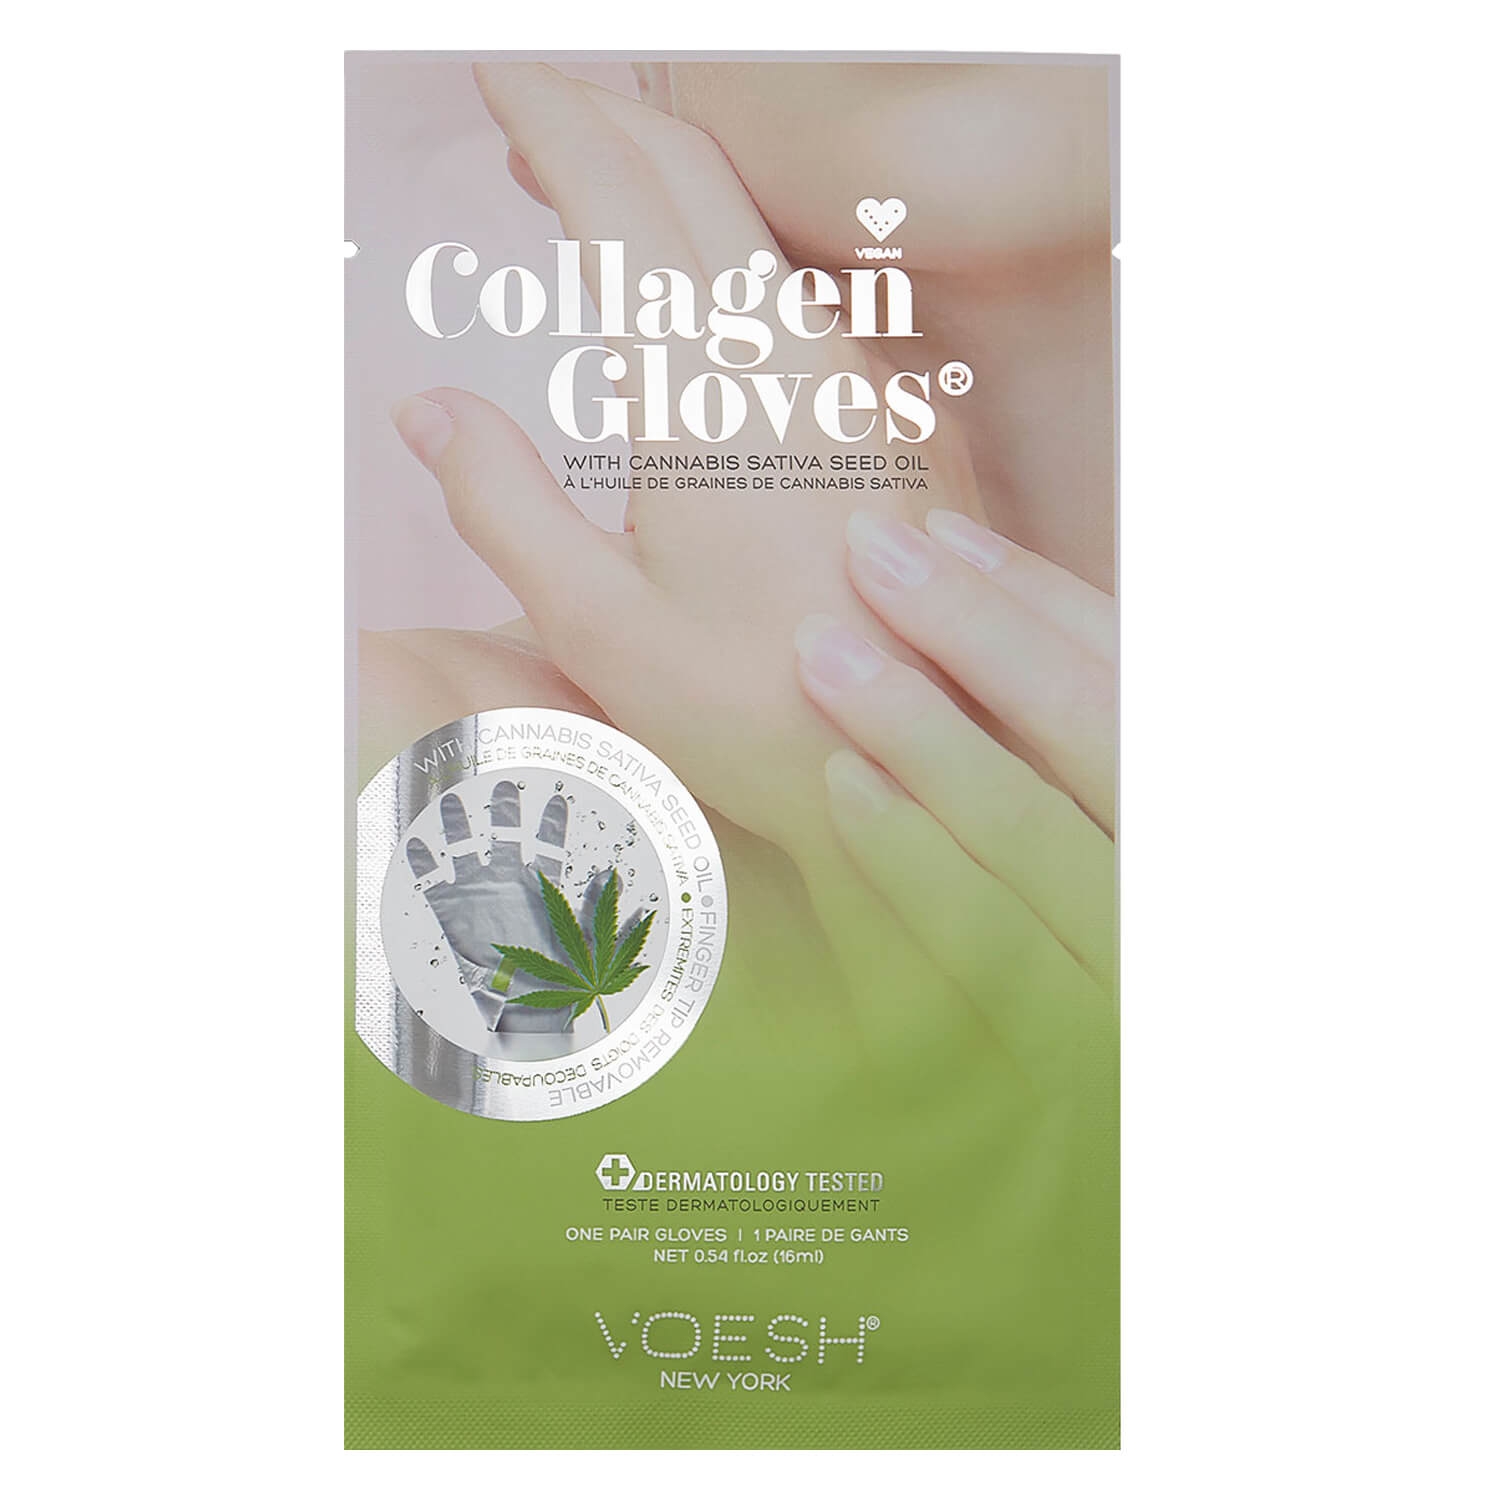 Produktbild von VOESH New York - Collagen Gloves Cannabis Seed Oil